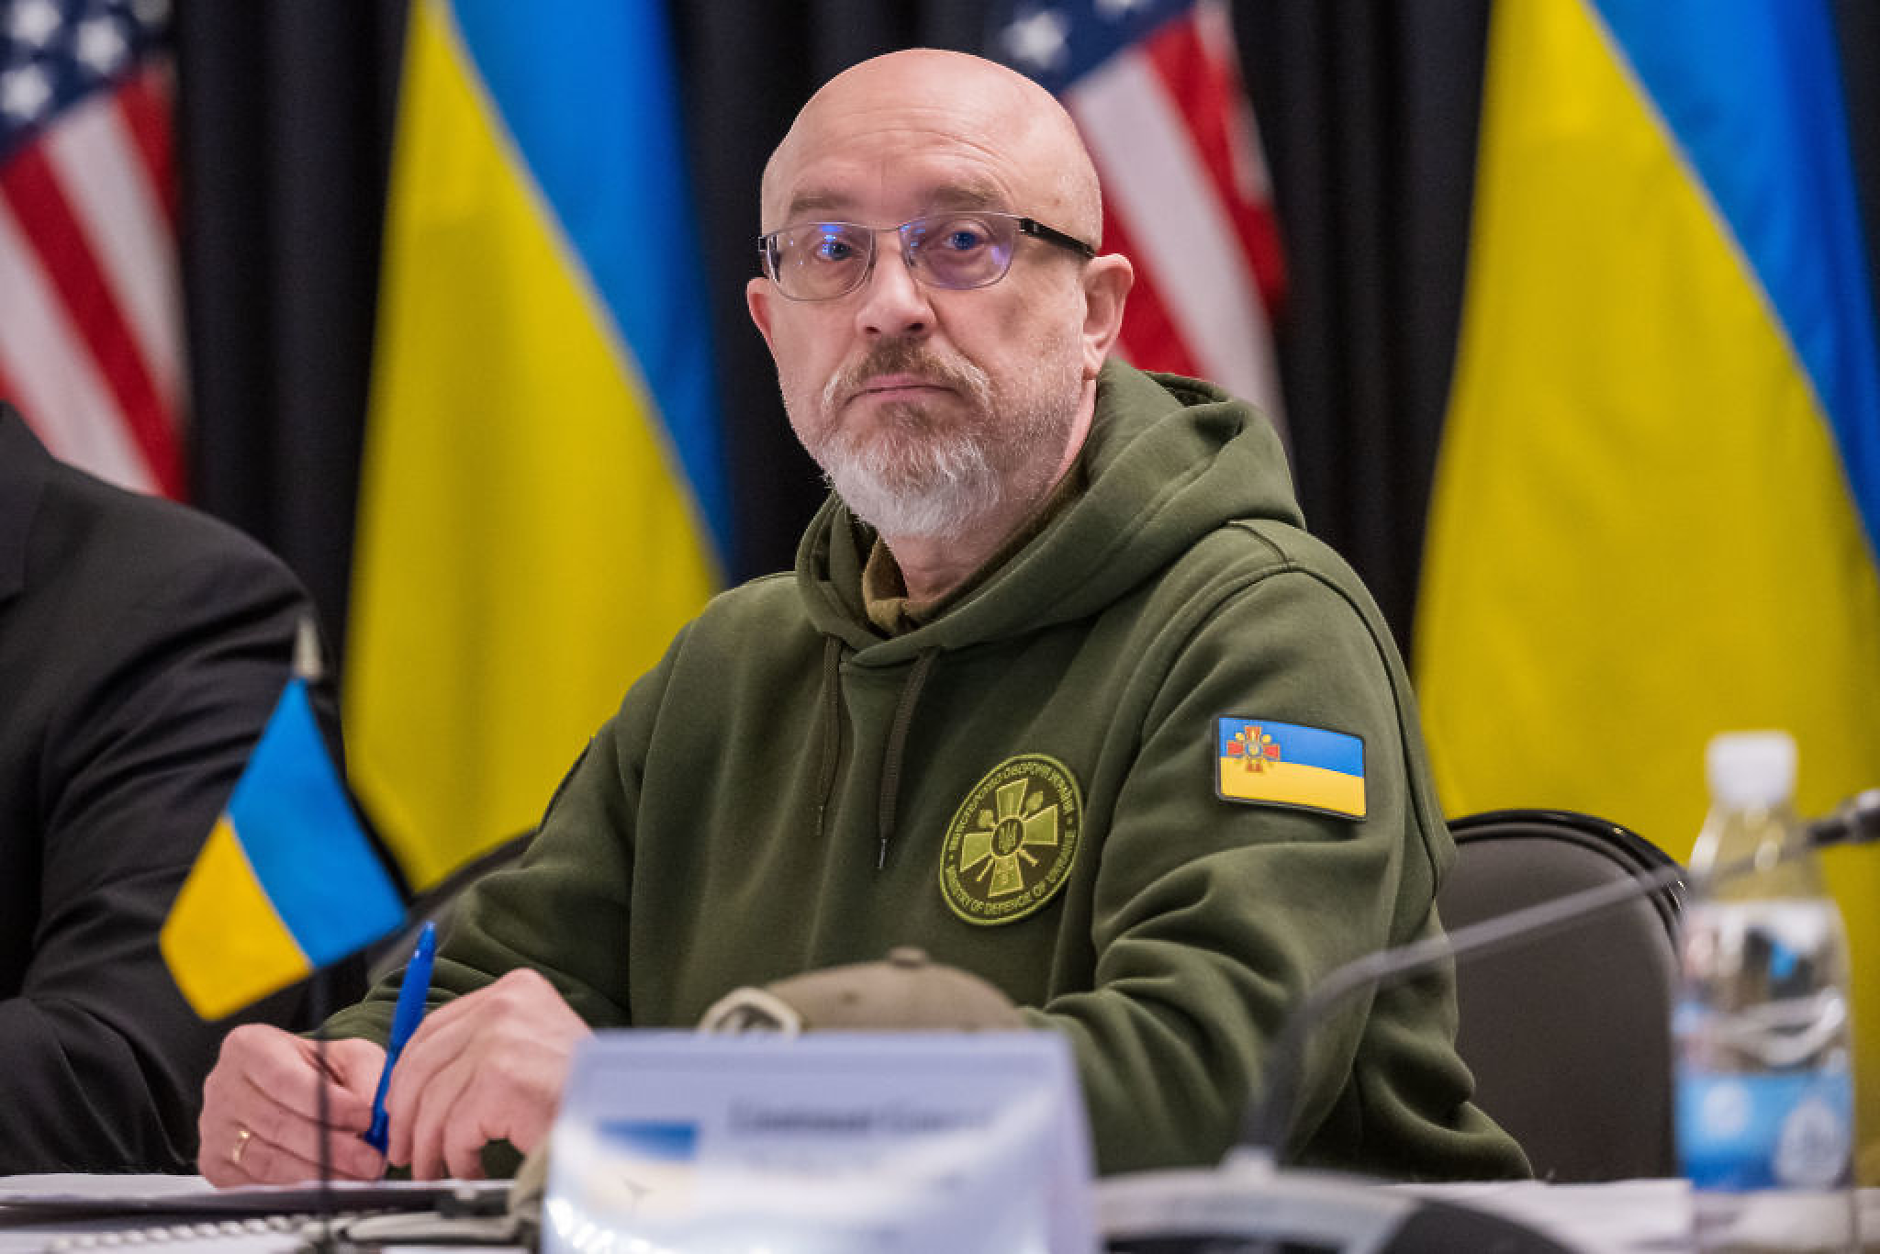 Зеленски сменя украинския министър на отбраната Олексий Резников